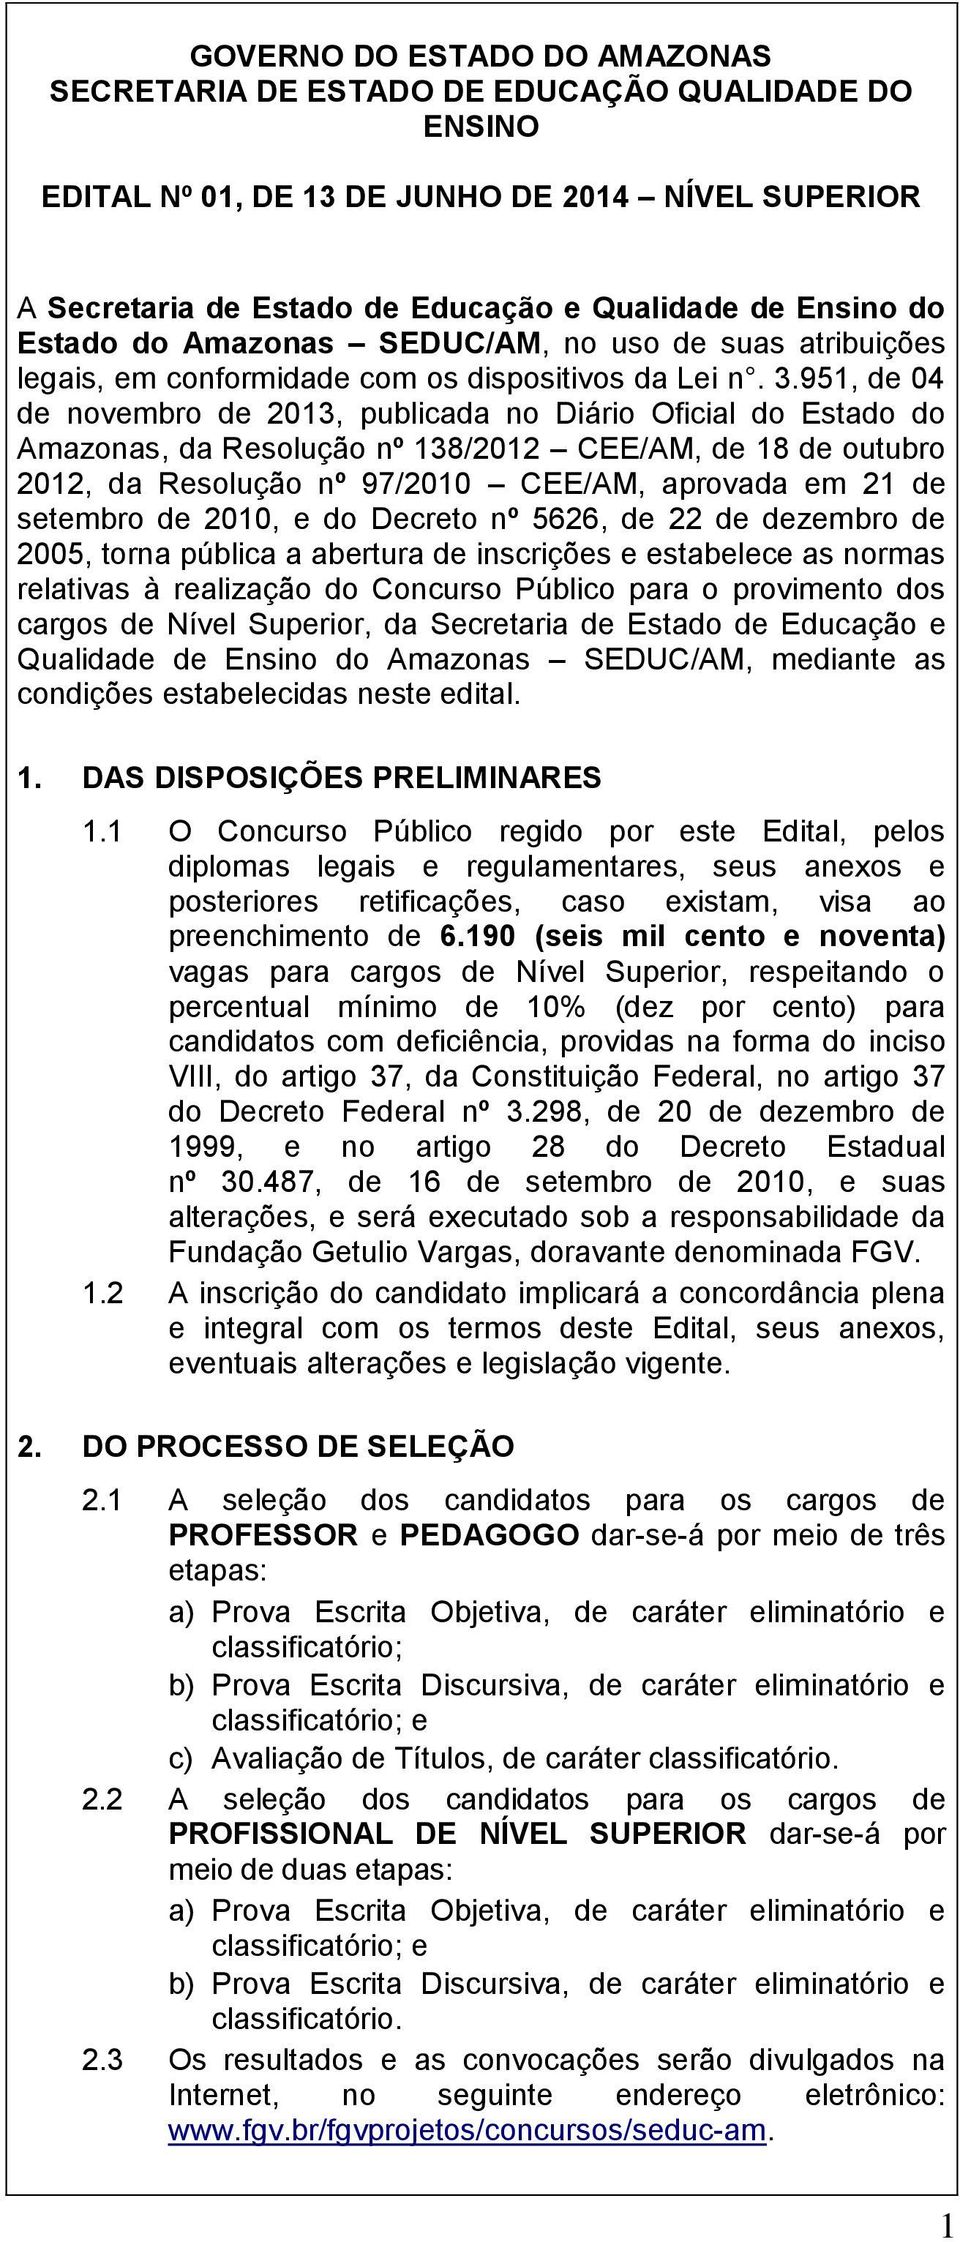 951, de 04 de novembro de 2013, publicada no Diário Oficial do Estado do Amazonas, da Resolução nº 138/2012 CEE/AM, de 18 de outubro 2012, da Resolução nº 97/2010 CEE/AM, aprovada em 21 de setembro